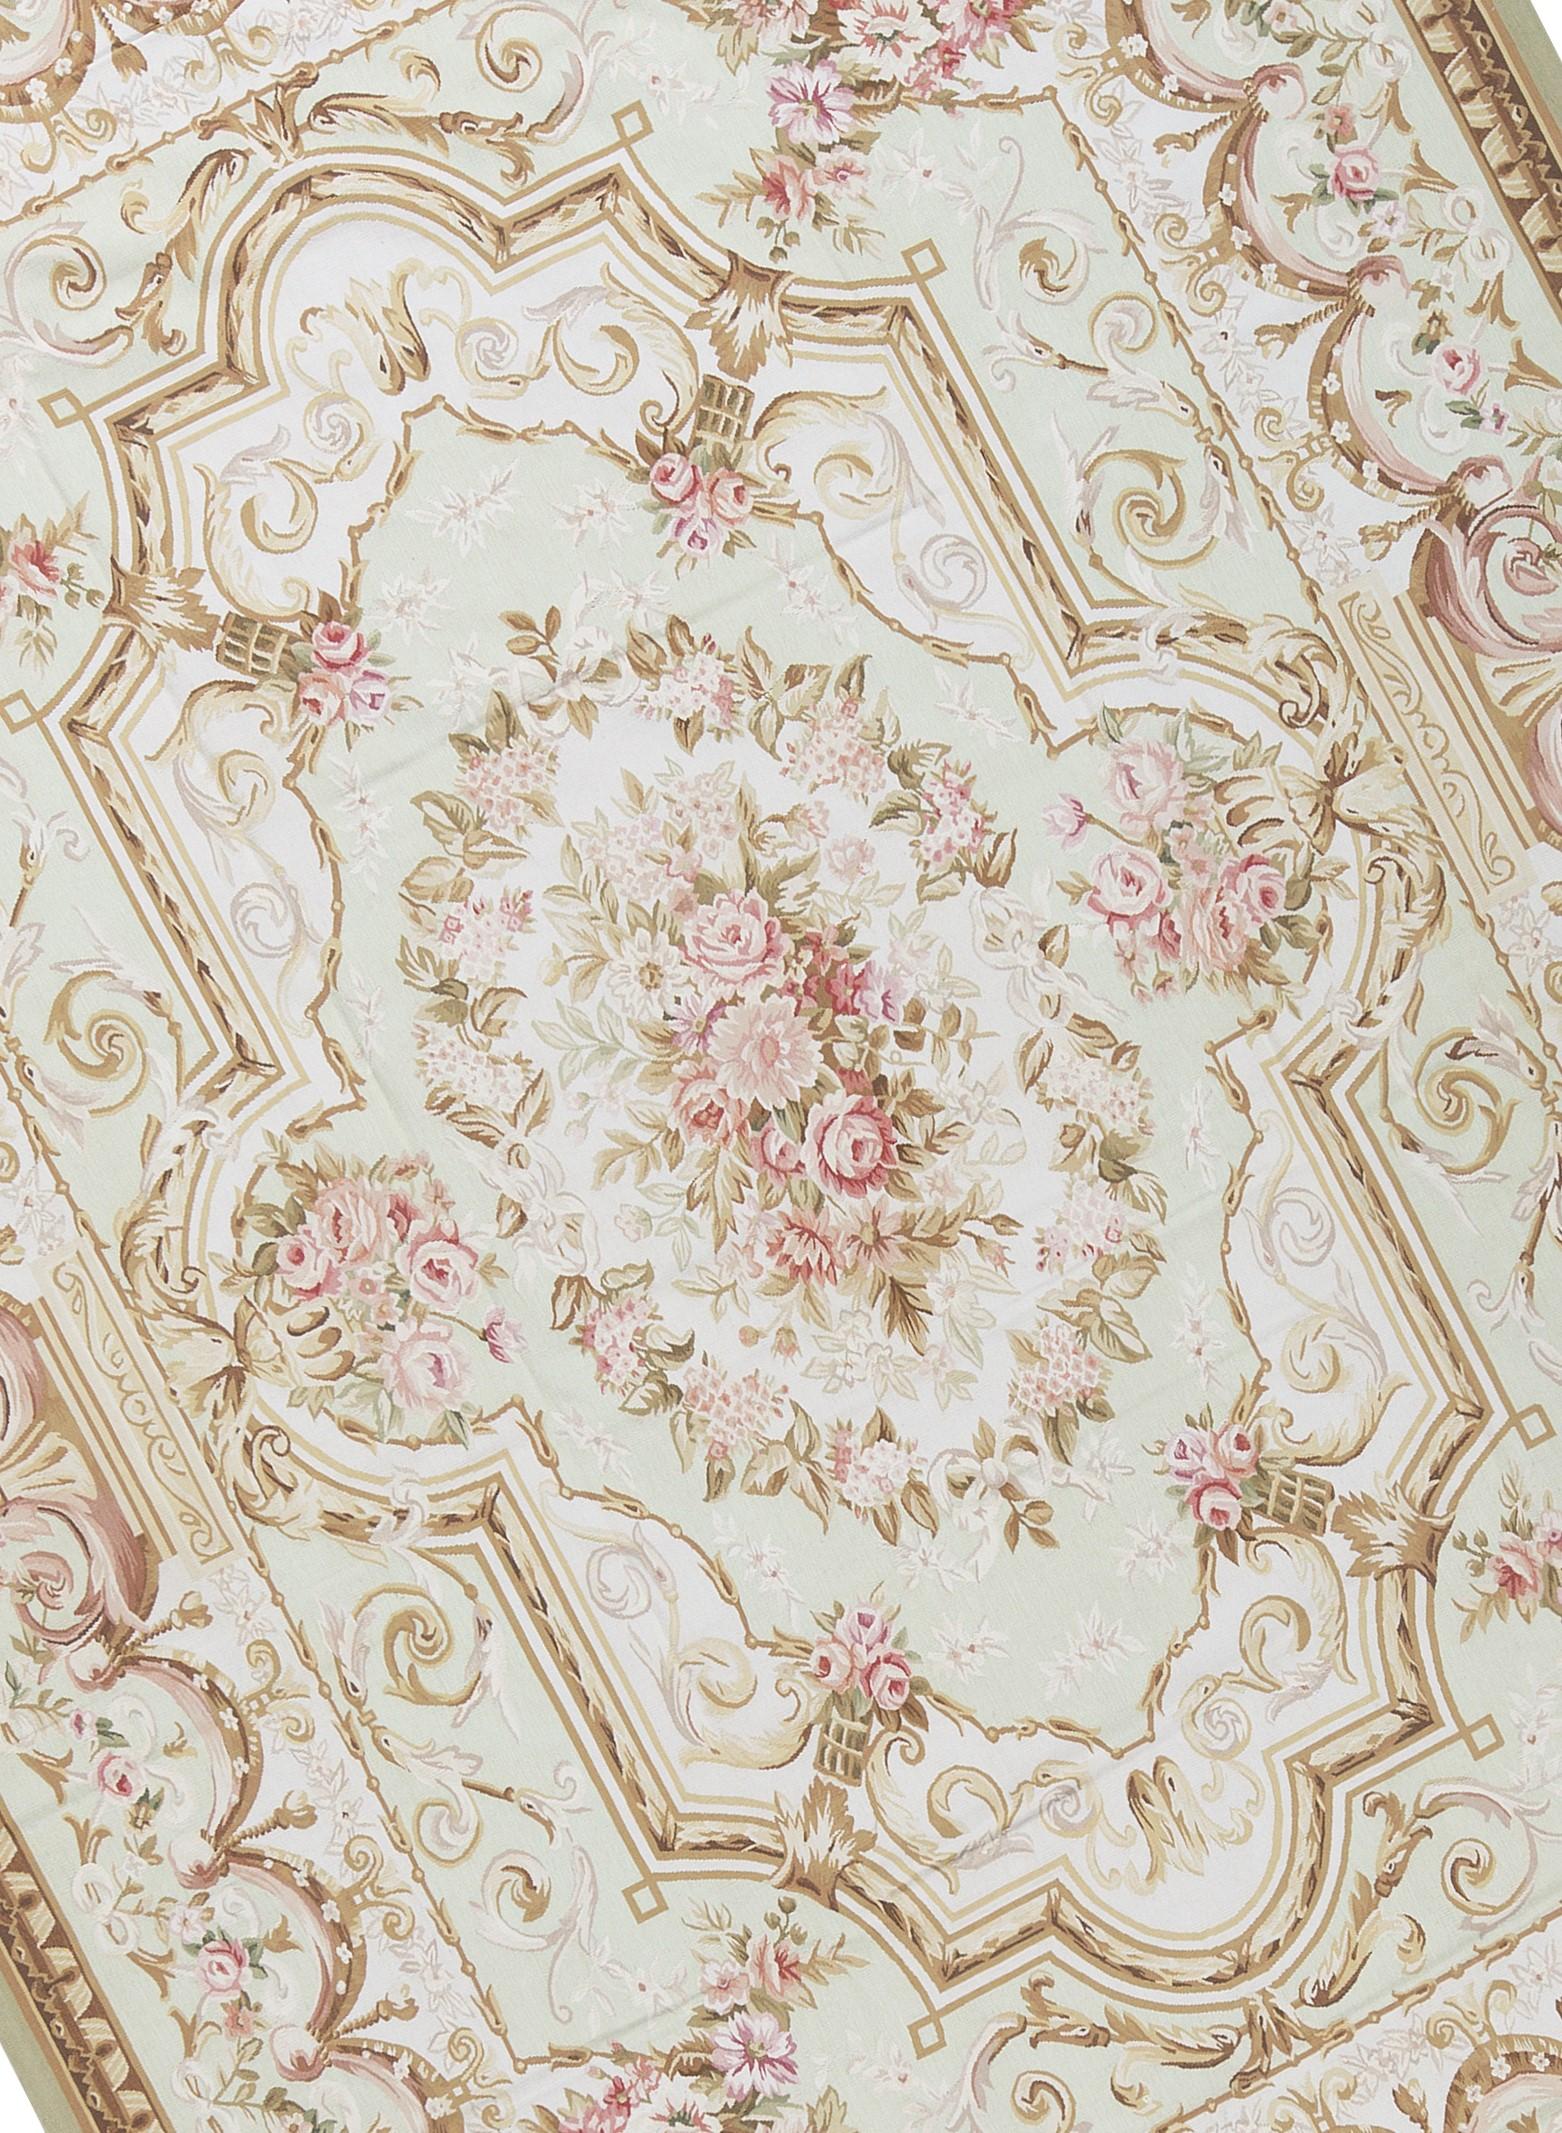 Recréation tissée à la main des tapis d'Aubusson classiques français à tissage plat que l'on trouve dans les maisons et les palais les plus raffinés depuis la fin du XVIIe siècle. Taille 8' 11